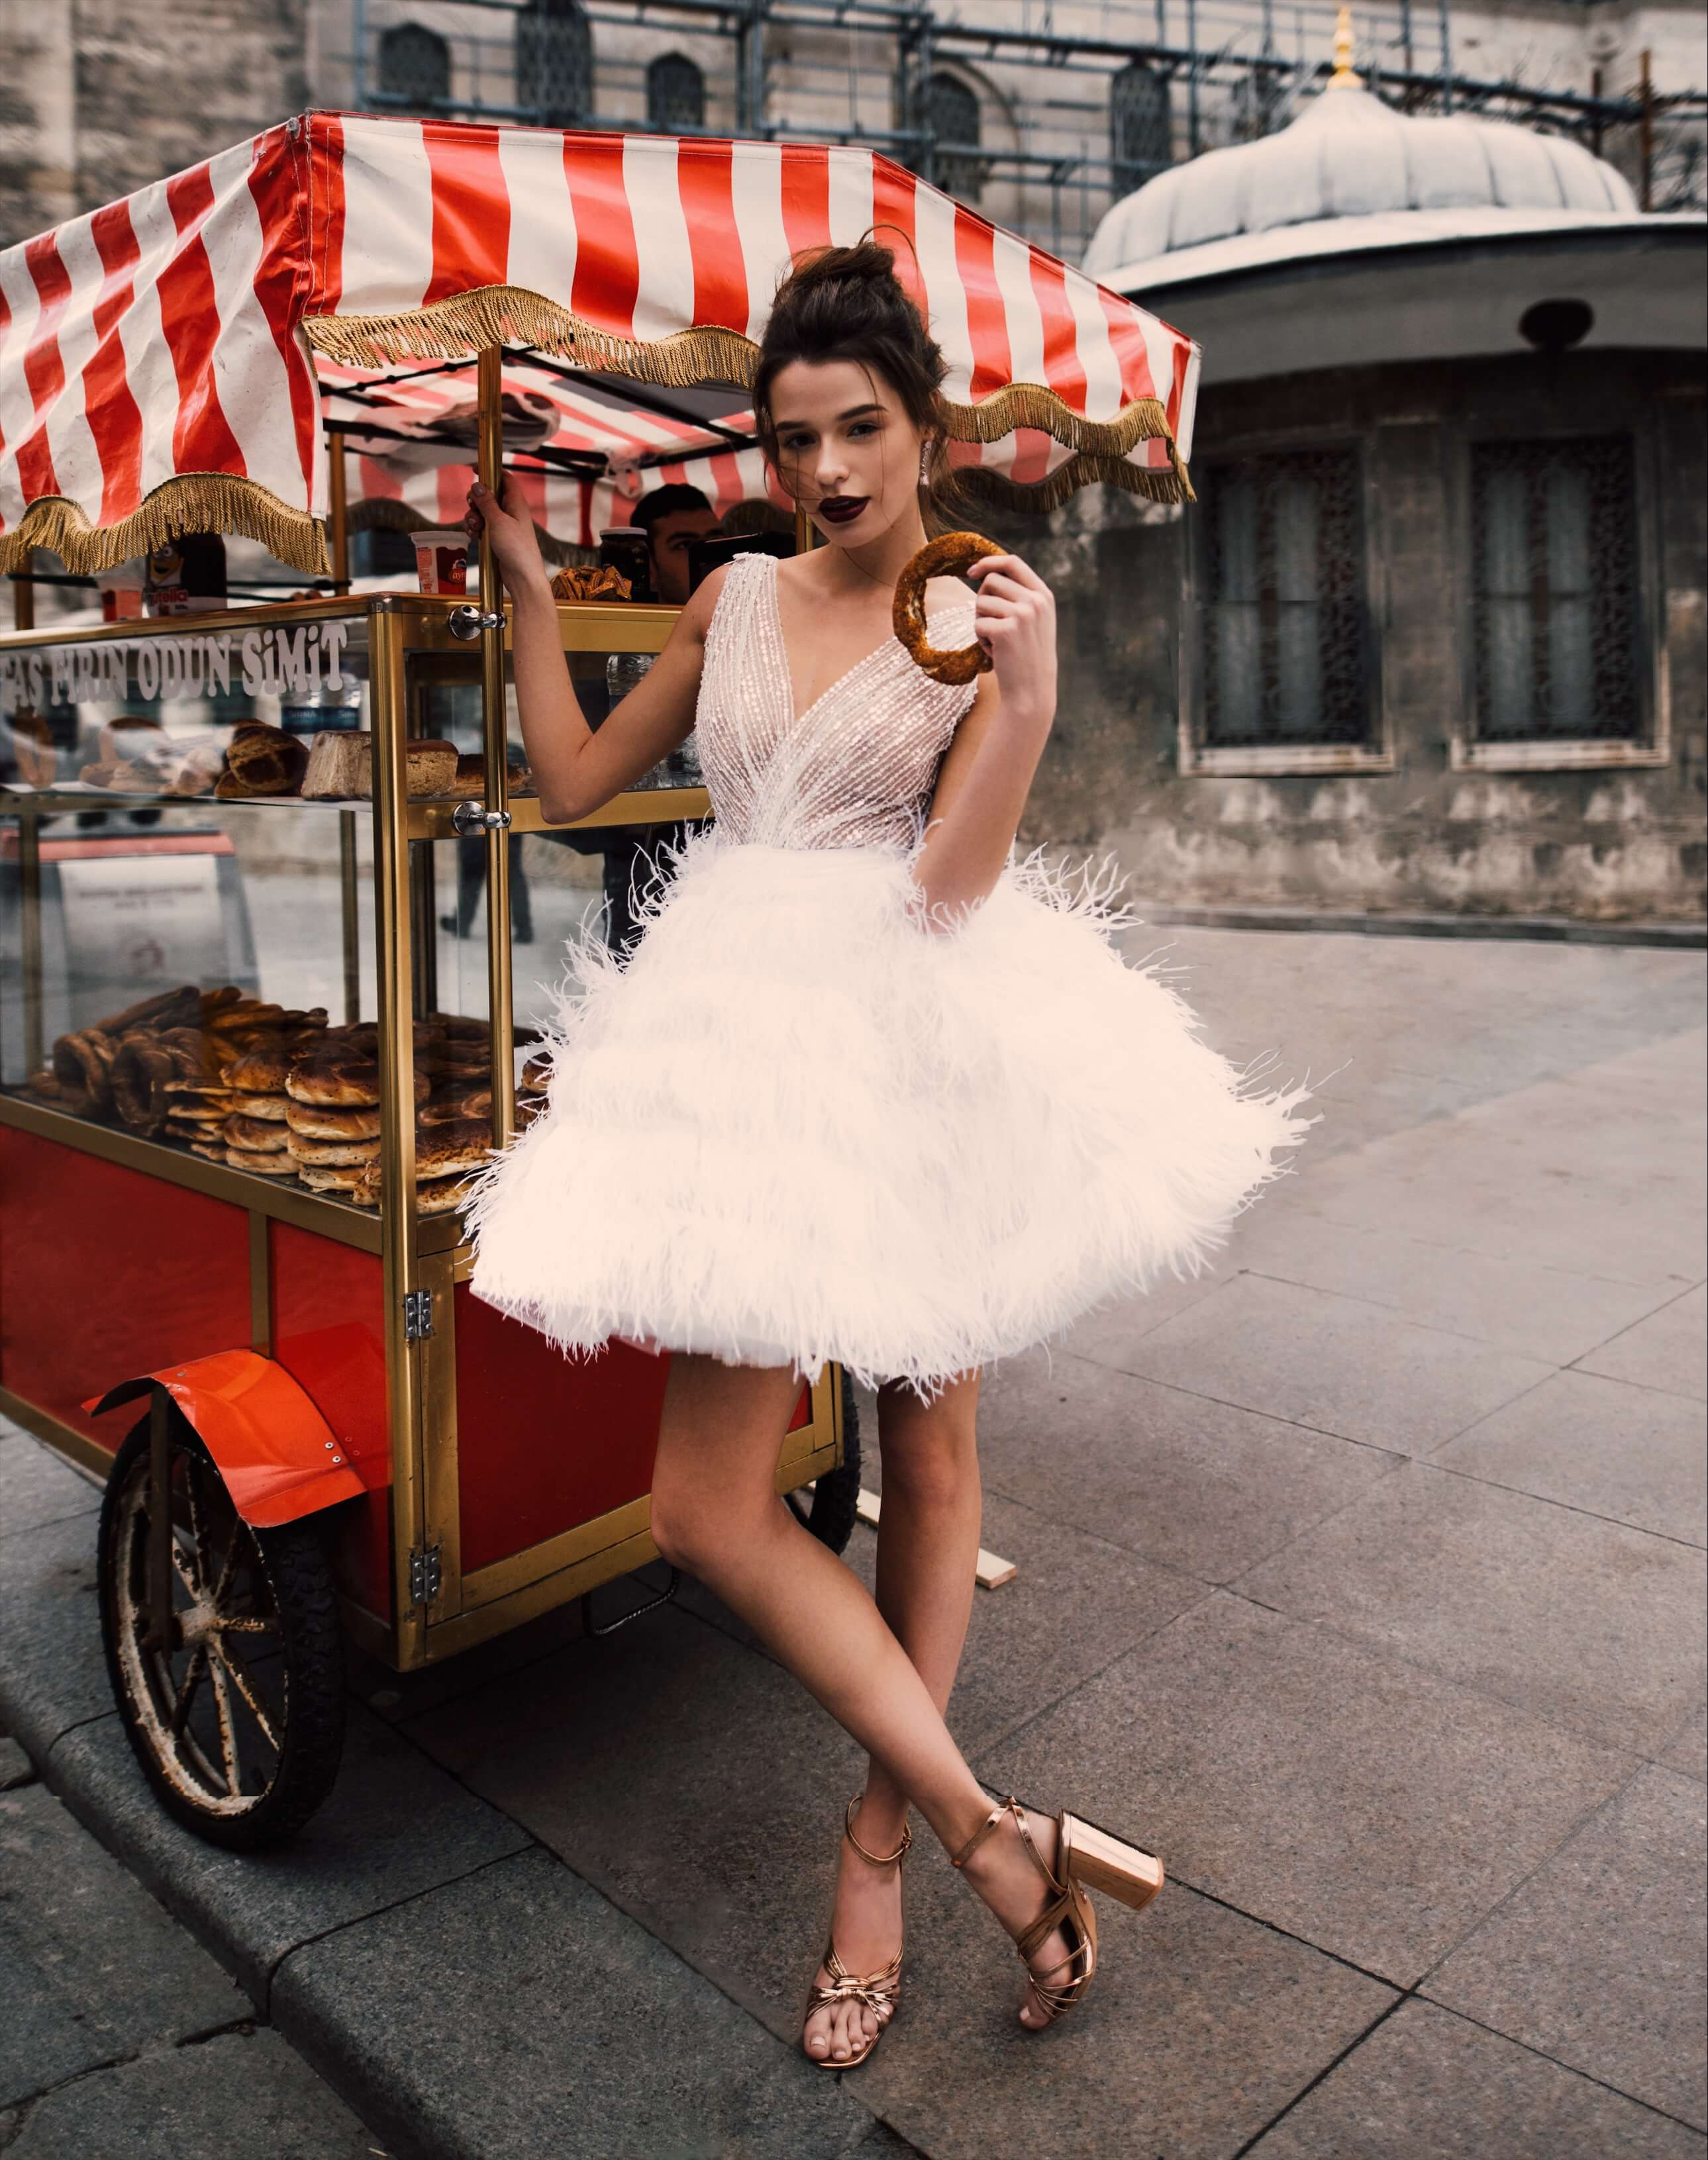 Купить свадебное платье «Алисия» Бламмо Биамо из коллекции 2018 года в Казани